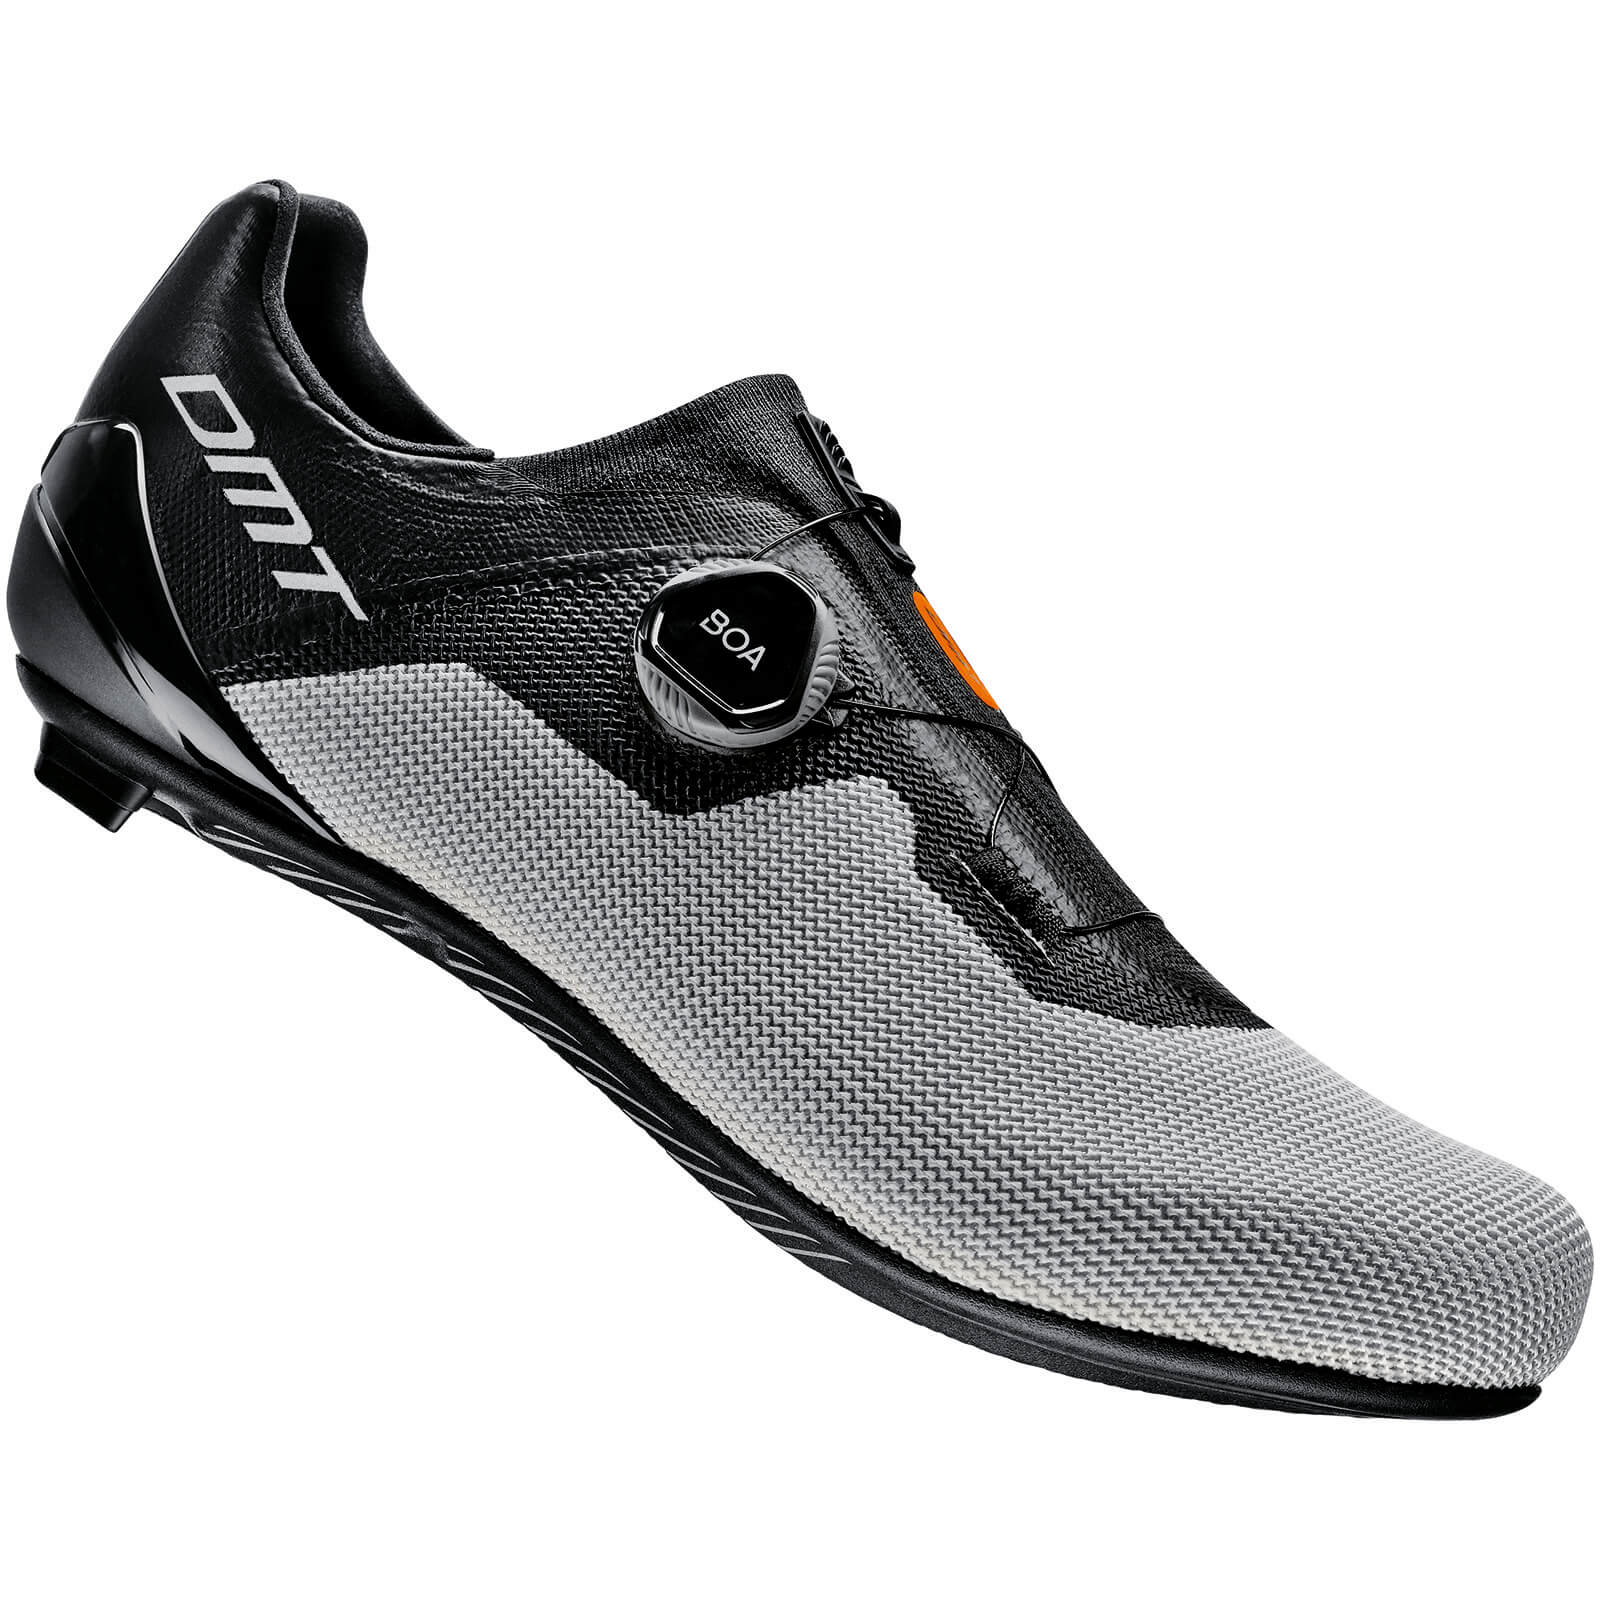 DMT KR4 Road Shoes - EU 42 - Black/Silver